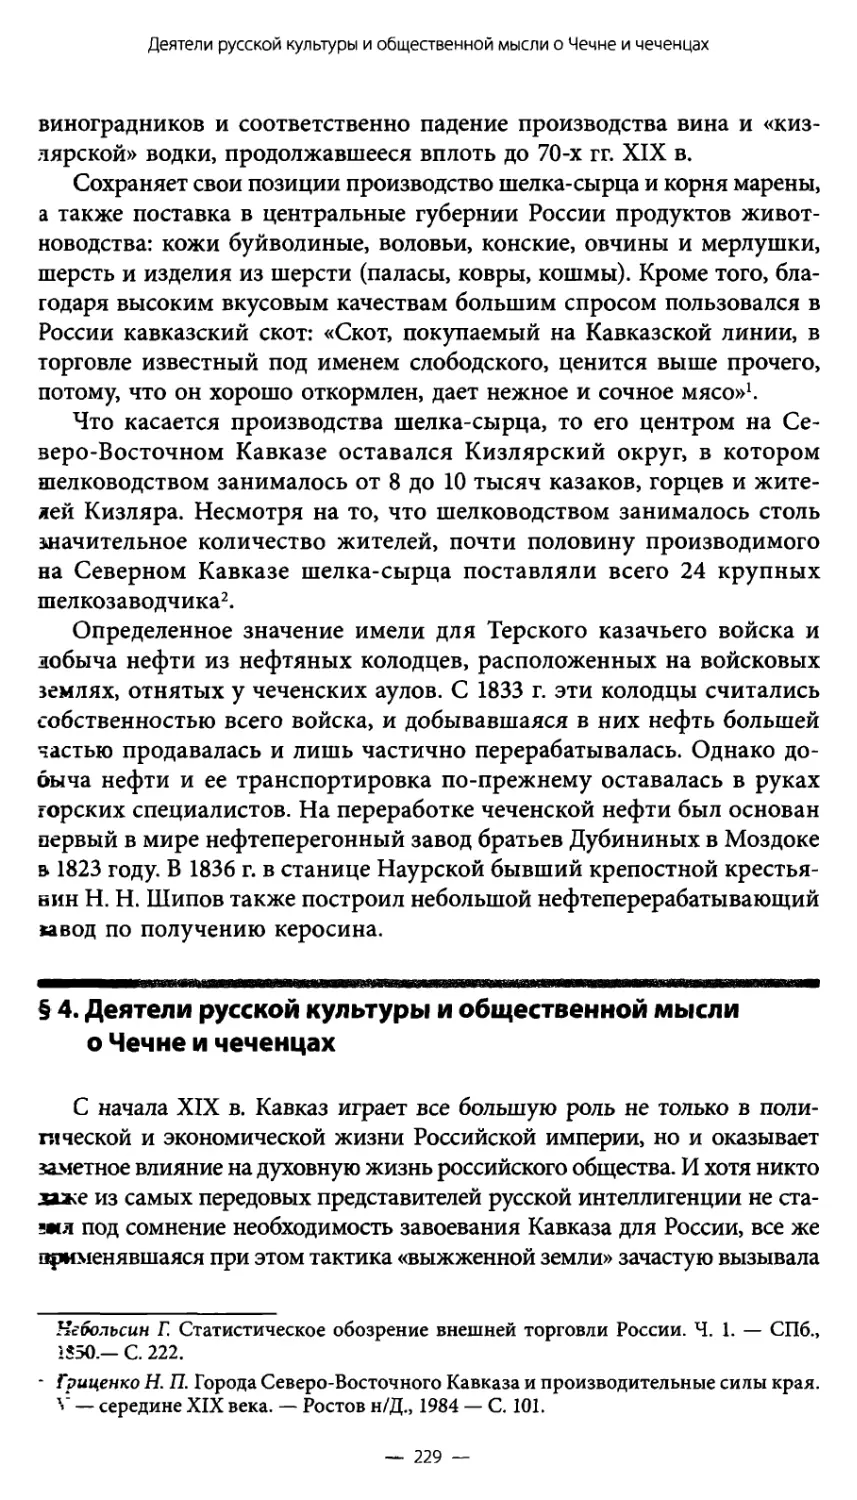 § 4. Деятели русской культуры и общественной мысли о Чечне и чеченцах